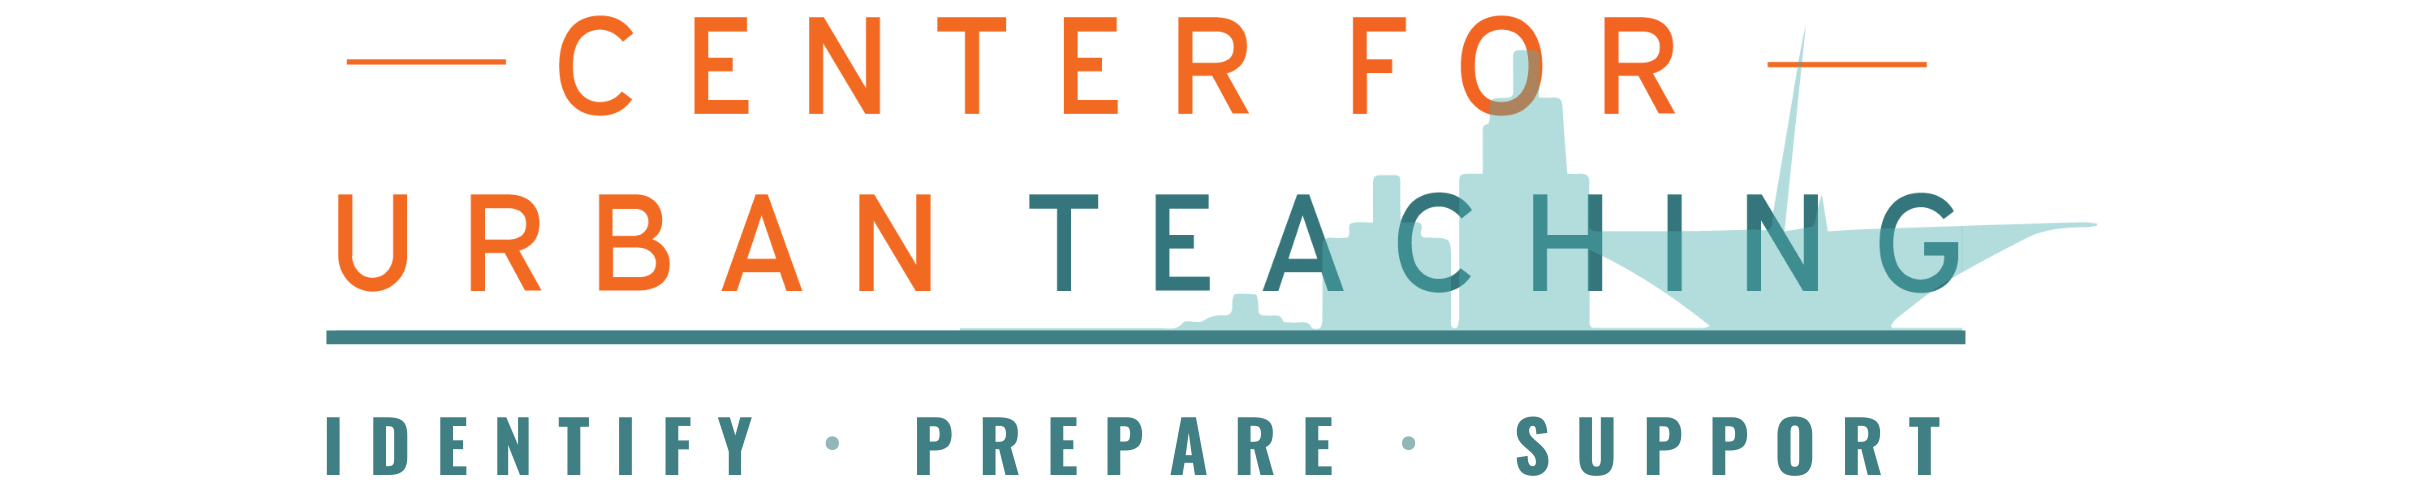 Center for Urban Teaching Logo